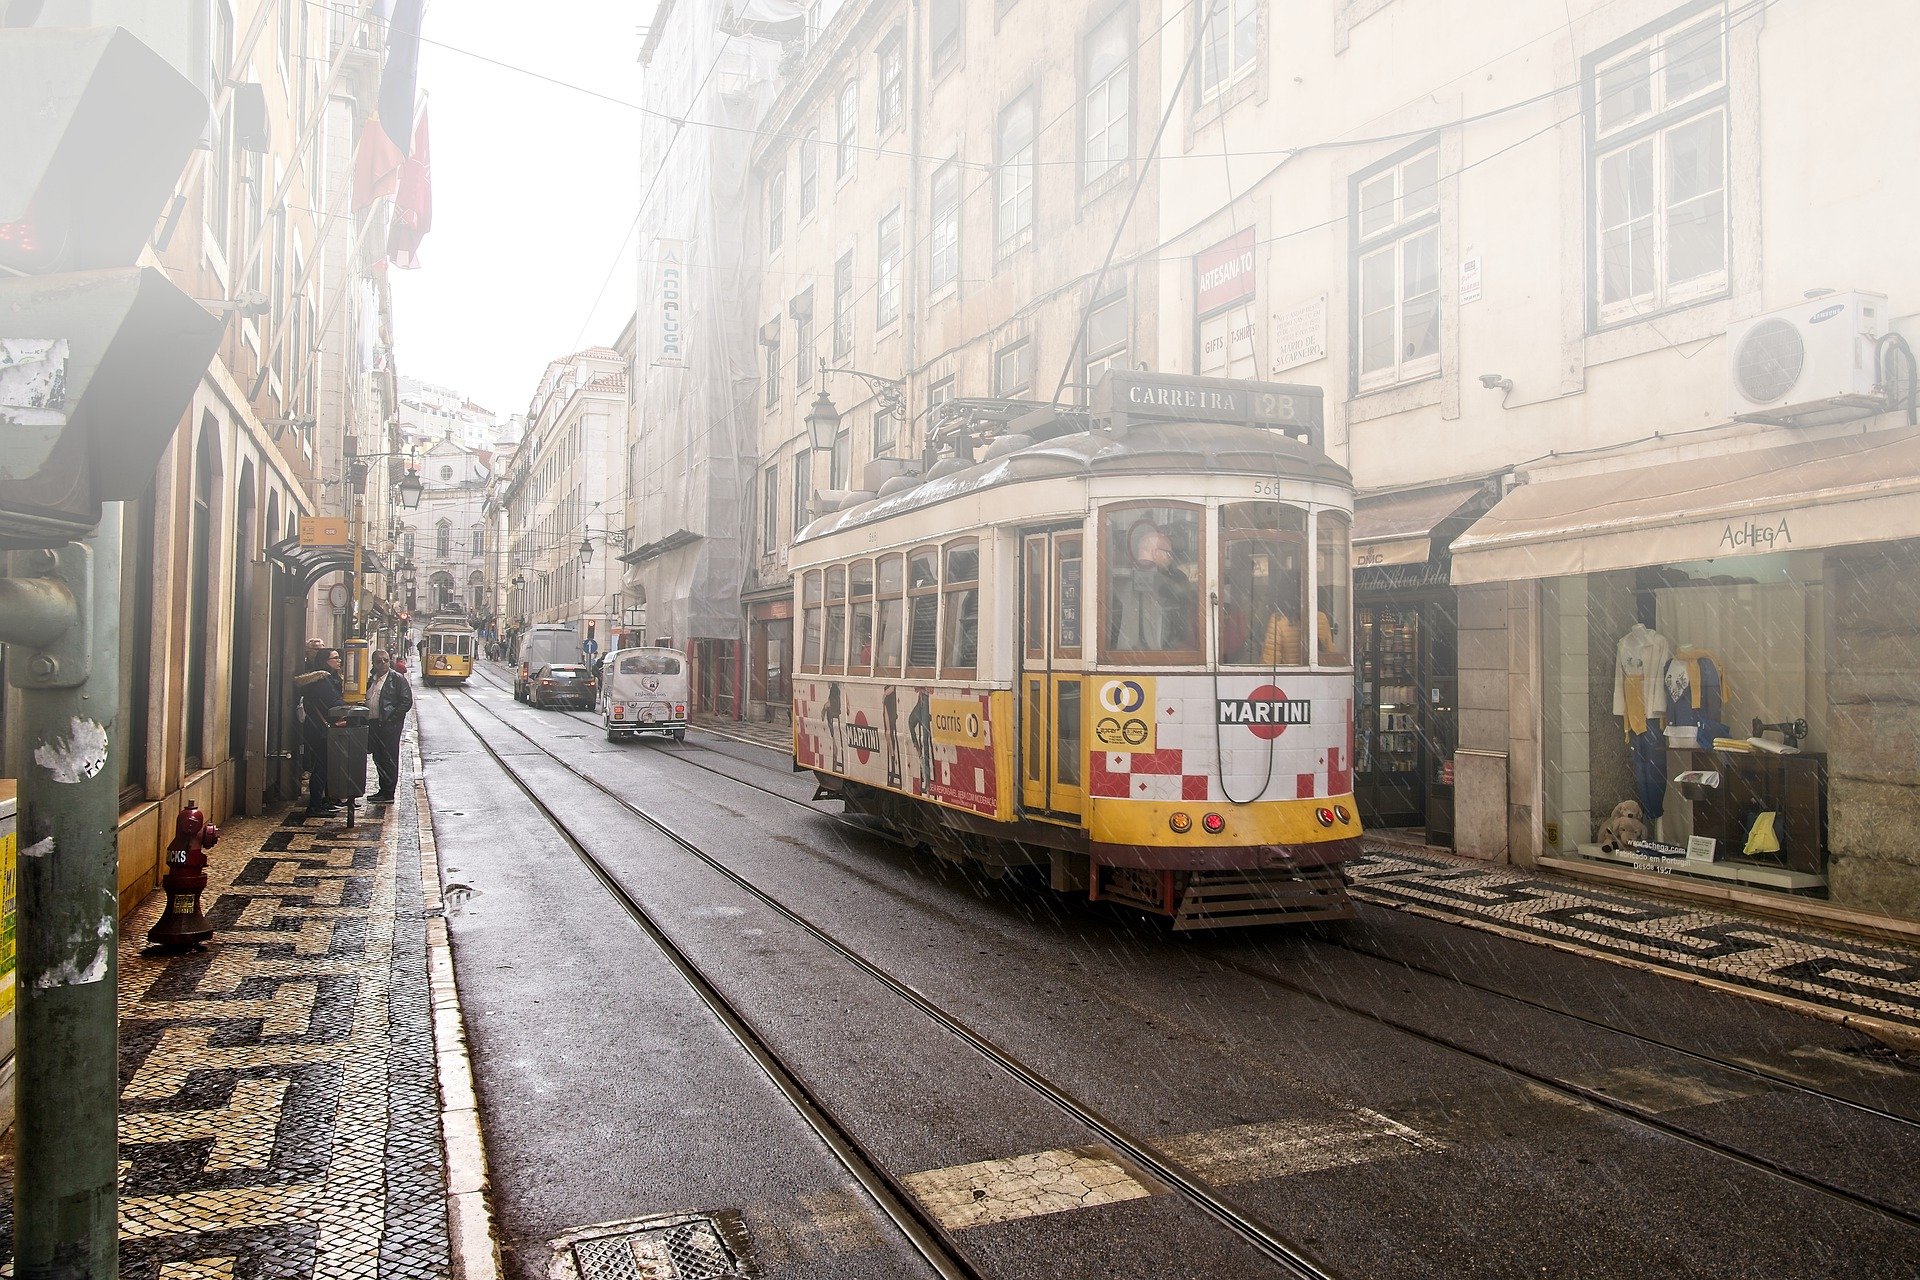 Tranvia Lisboa